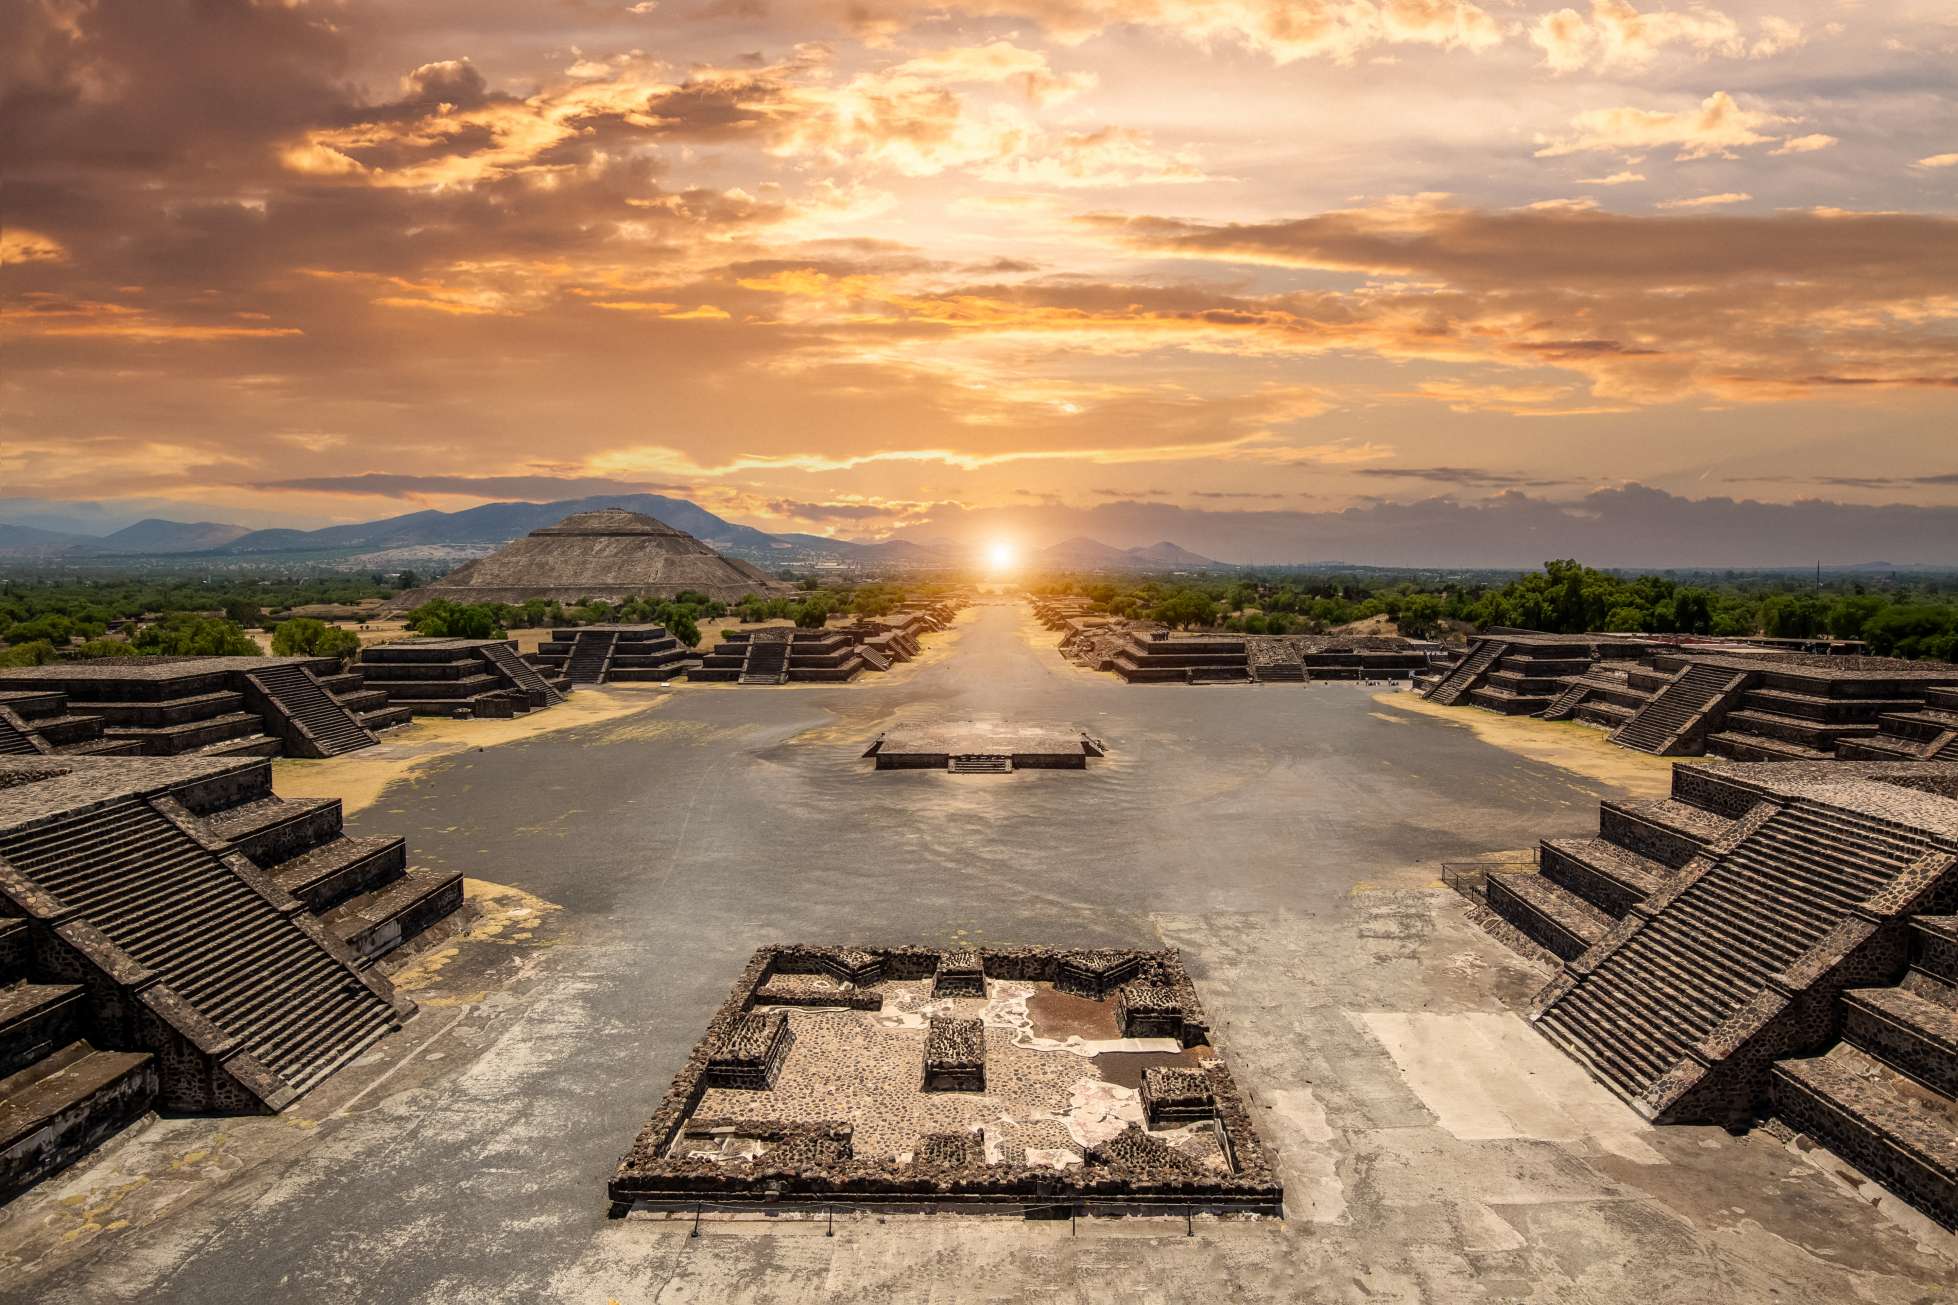 Nel cuore del Messico si trova un affascinante sito archeologico che da secoli lascia perplessi gli esperti. Teotihuacán, che significa "il luogo in cui furono creati gli dei", ospita alcune delle più imponenti piramidi e rovine di tutta l'America centrale. Il complesso delle piramidi di Teotihuacán si trova nelle Highlands messicane e nella Valle del Messico, vicino a Città del Messico. © iStock